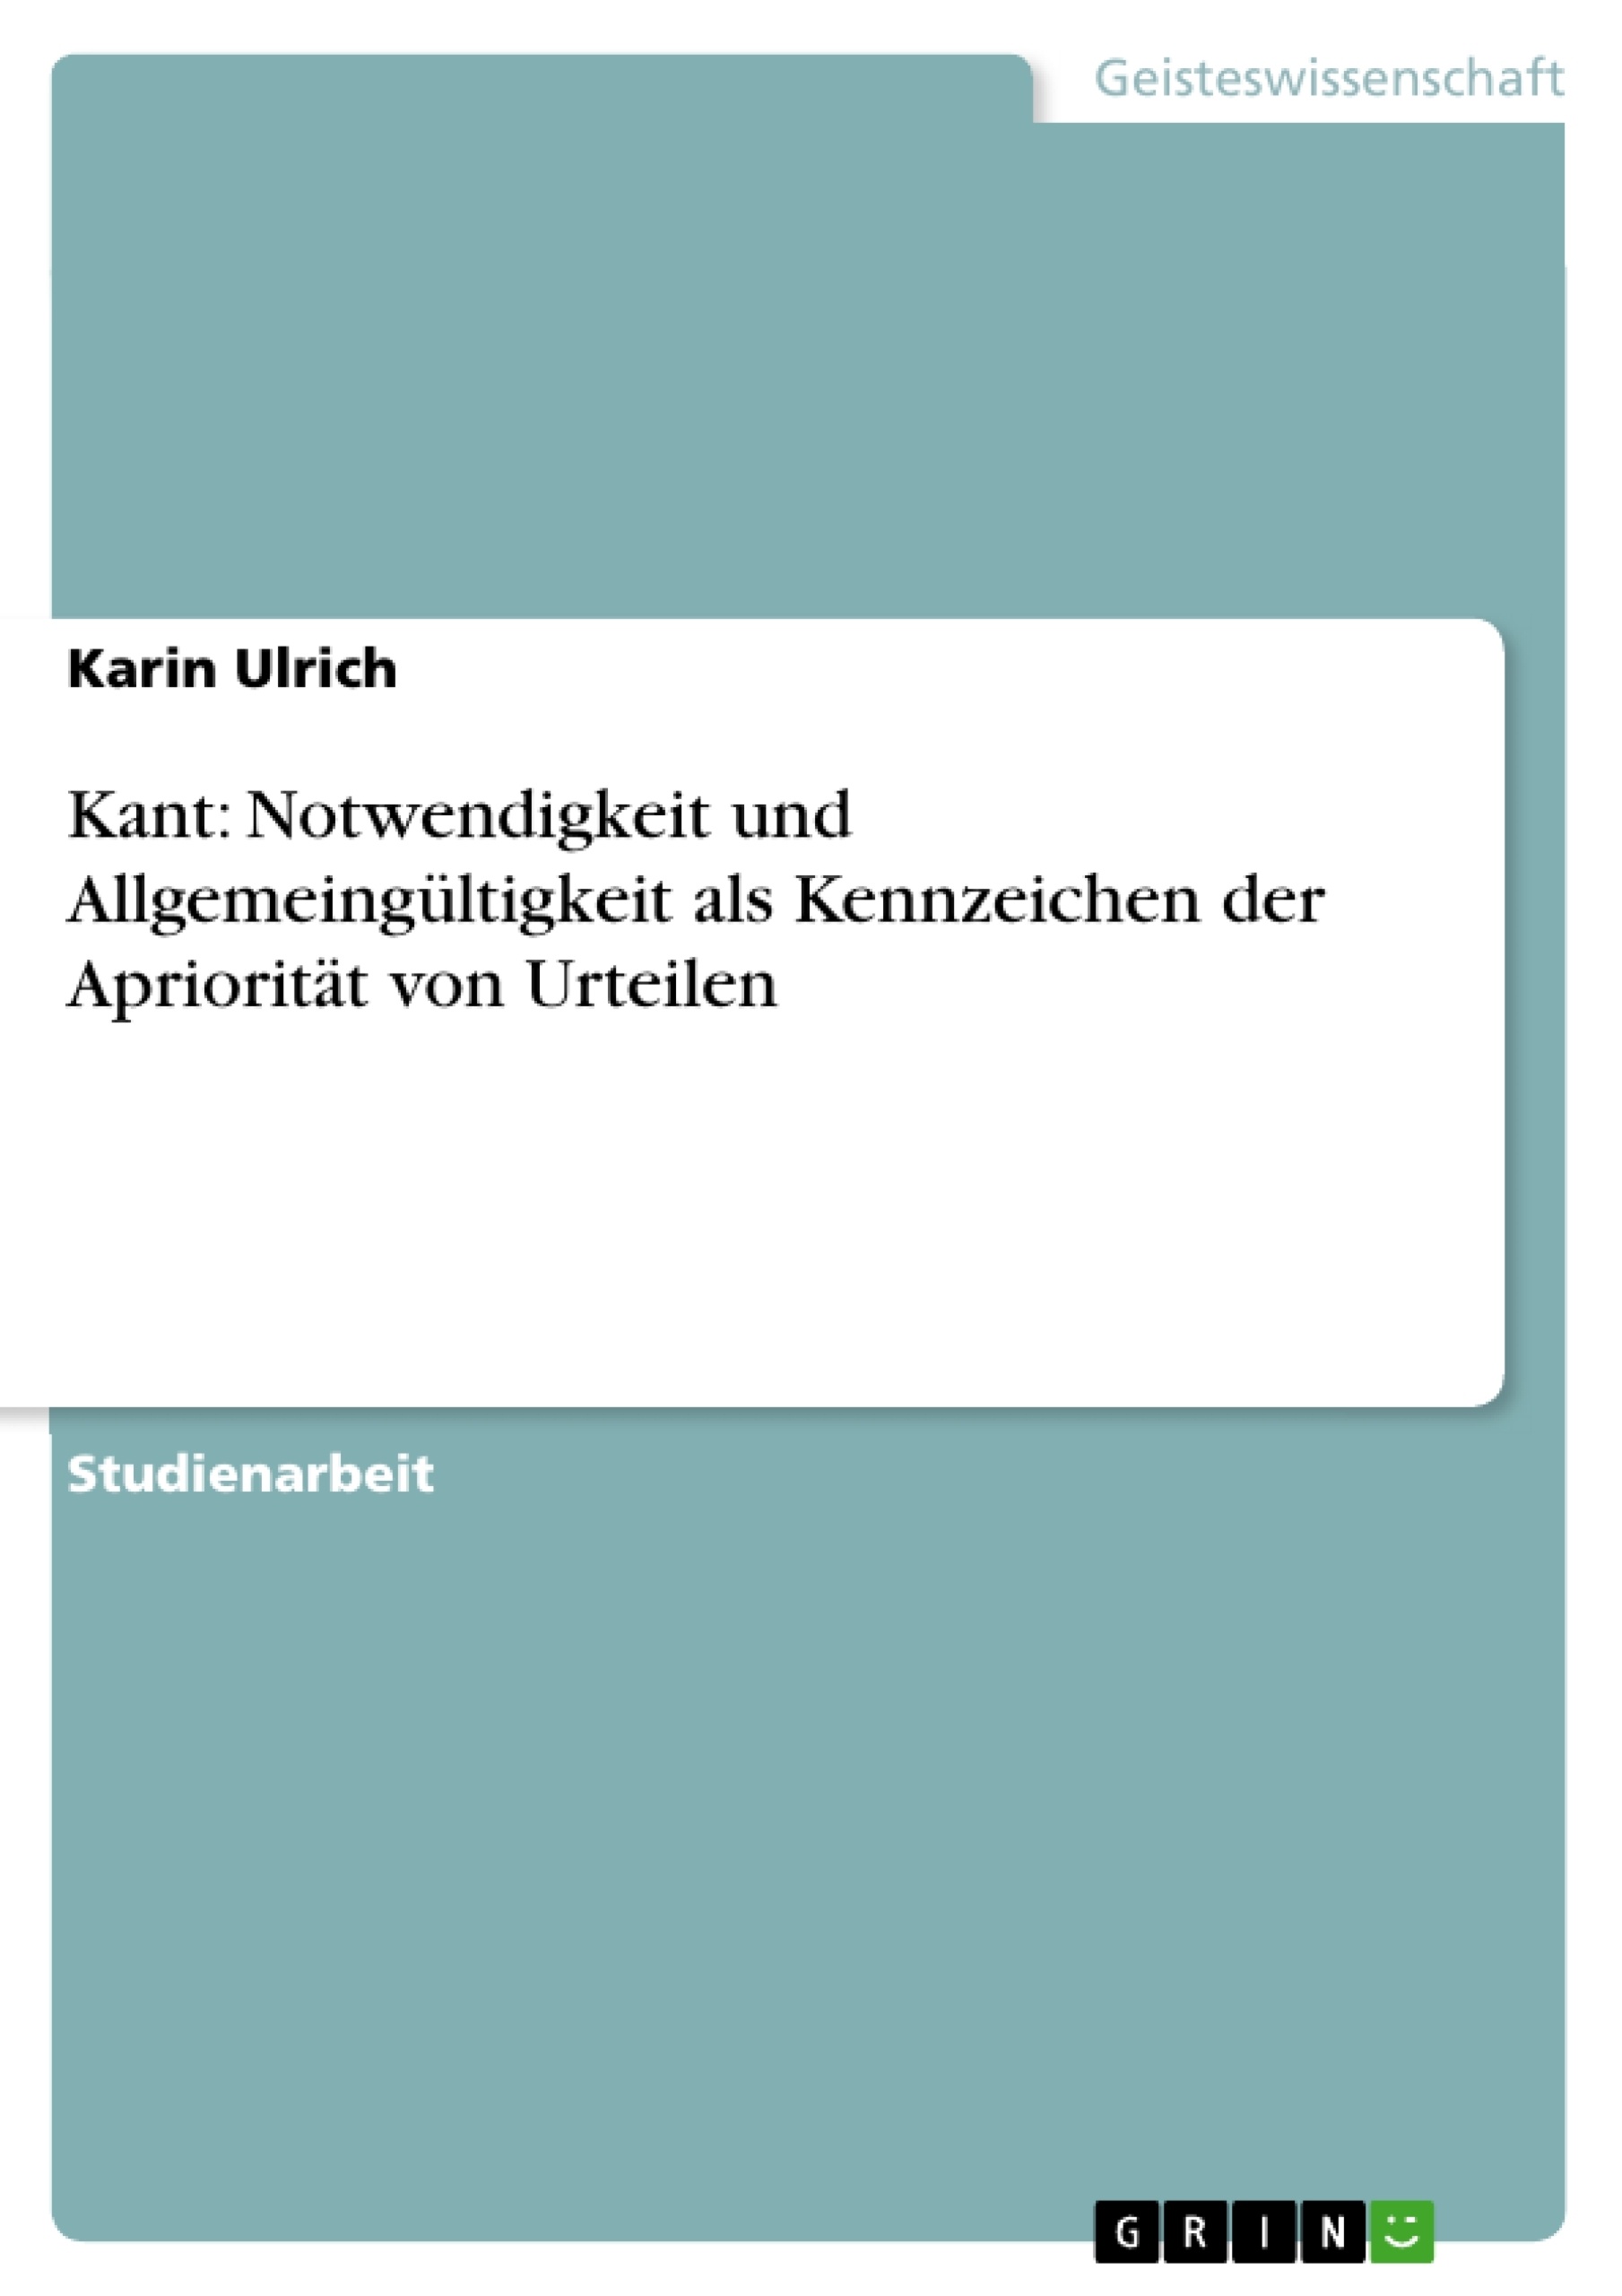 Título: Kant: Notwendigkeit und Allgemeingültigkeit als Kennzeichen der Apriorität von Urteilen 